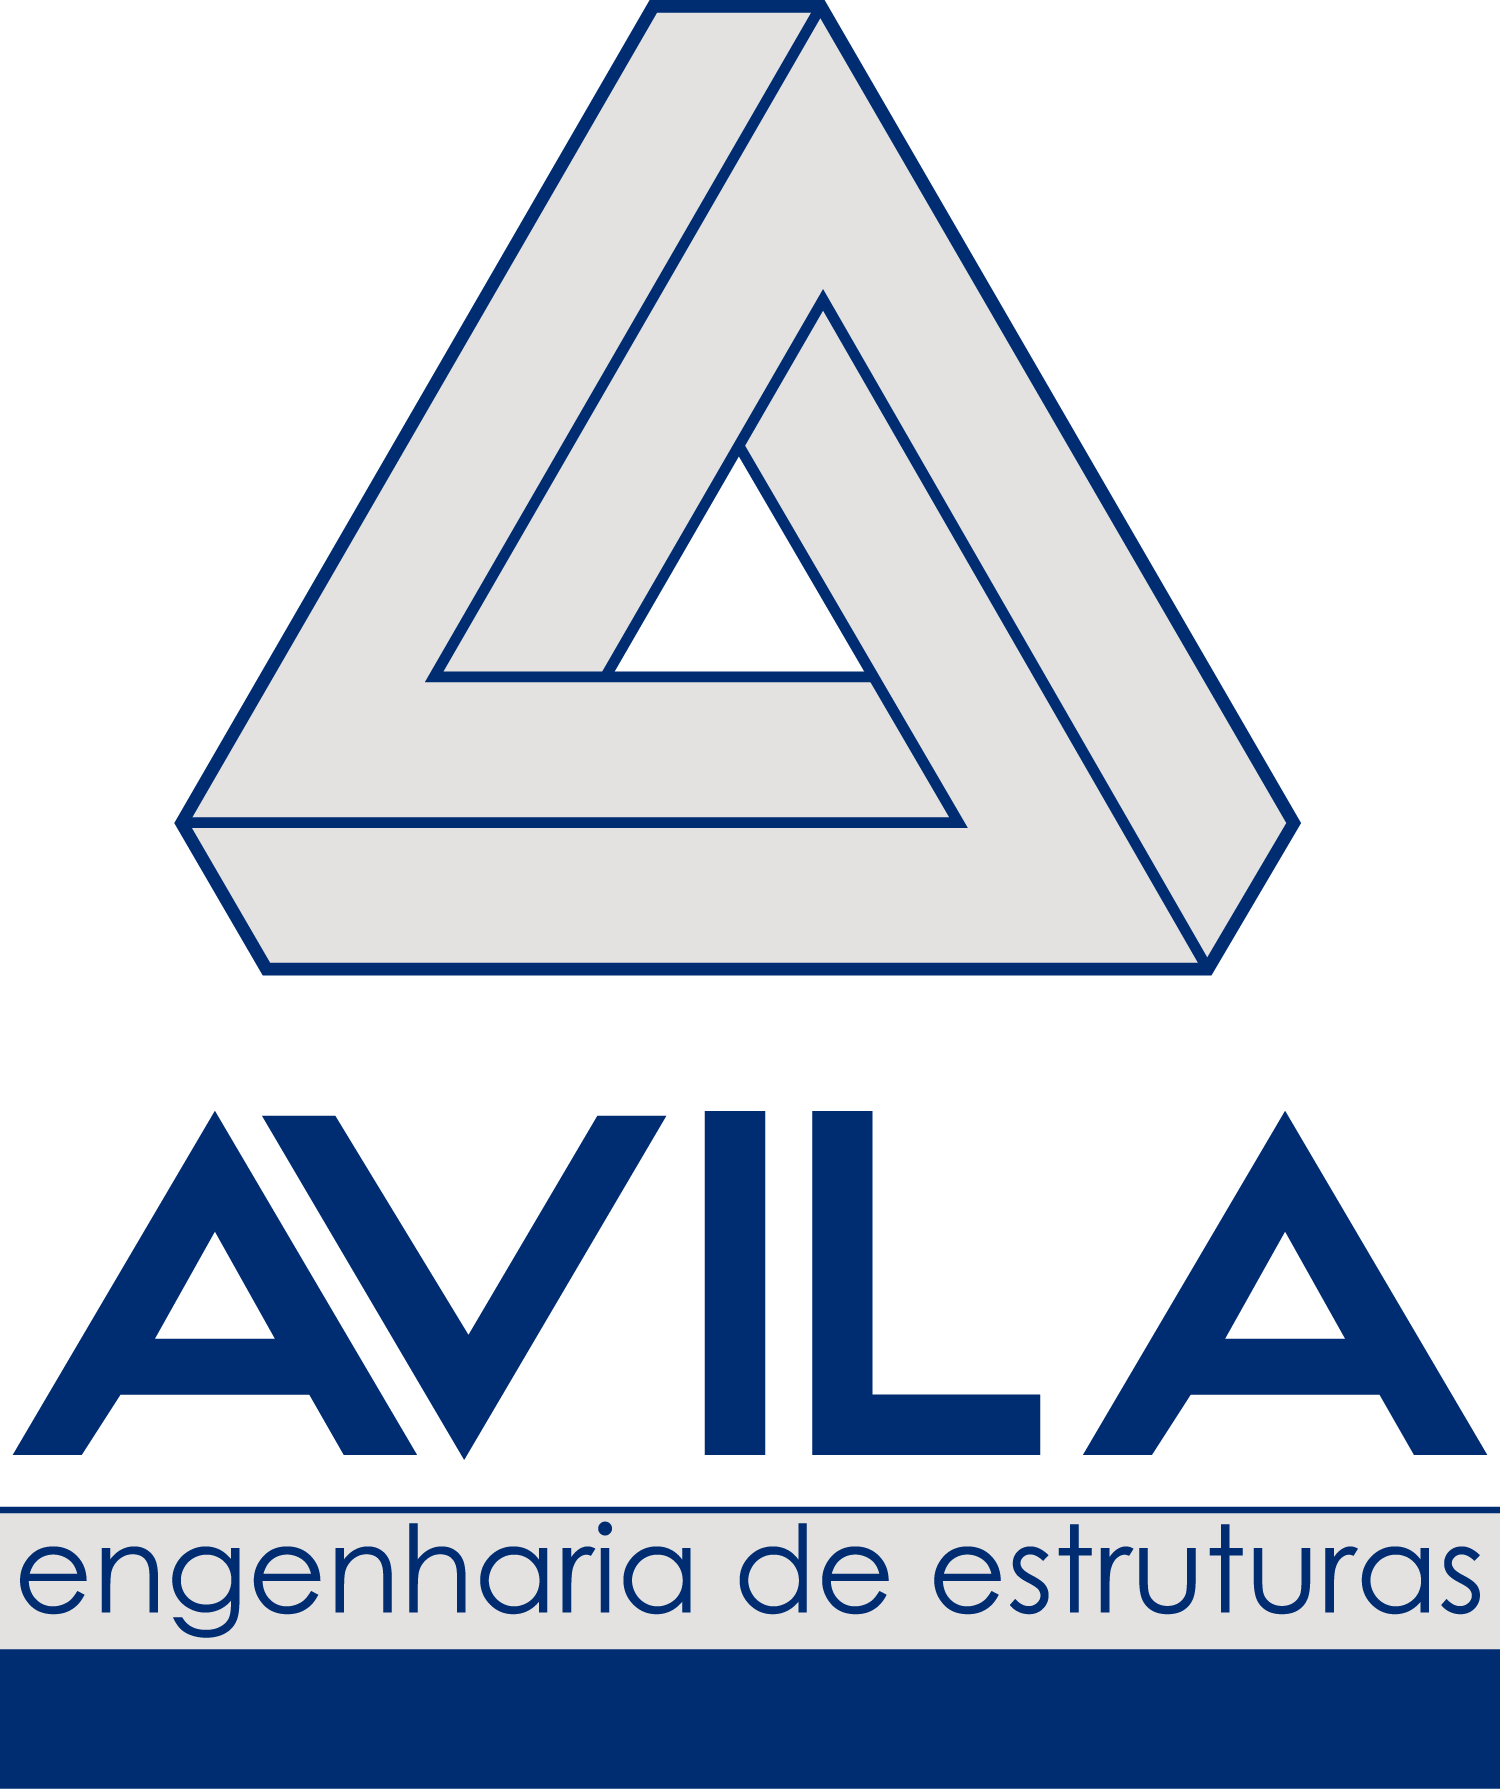 Avila